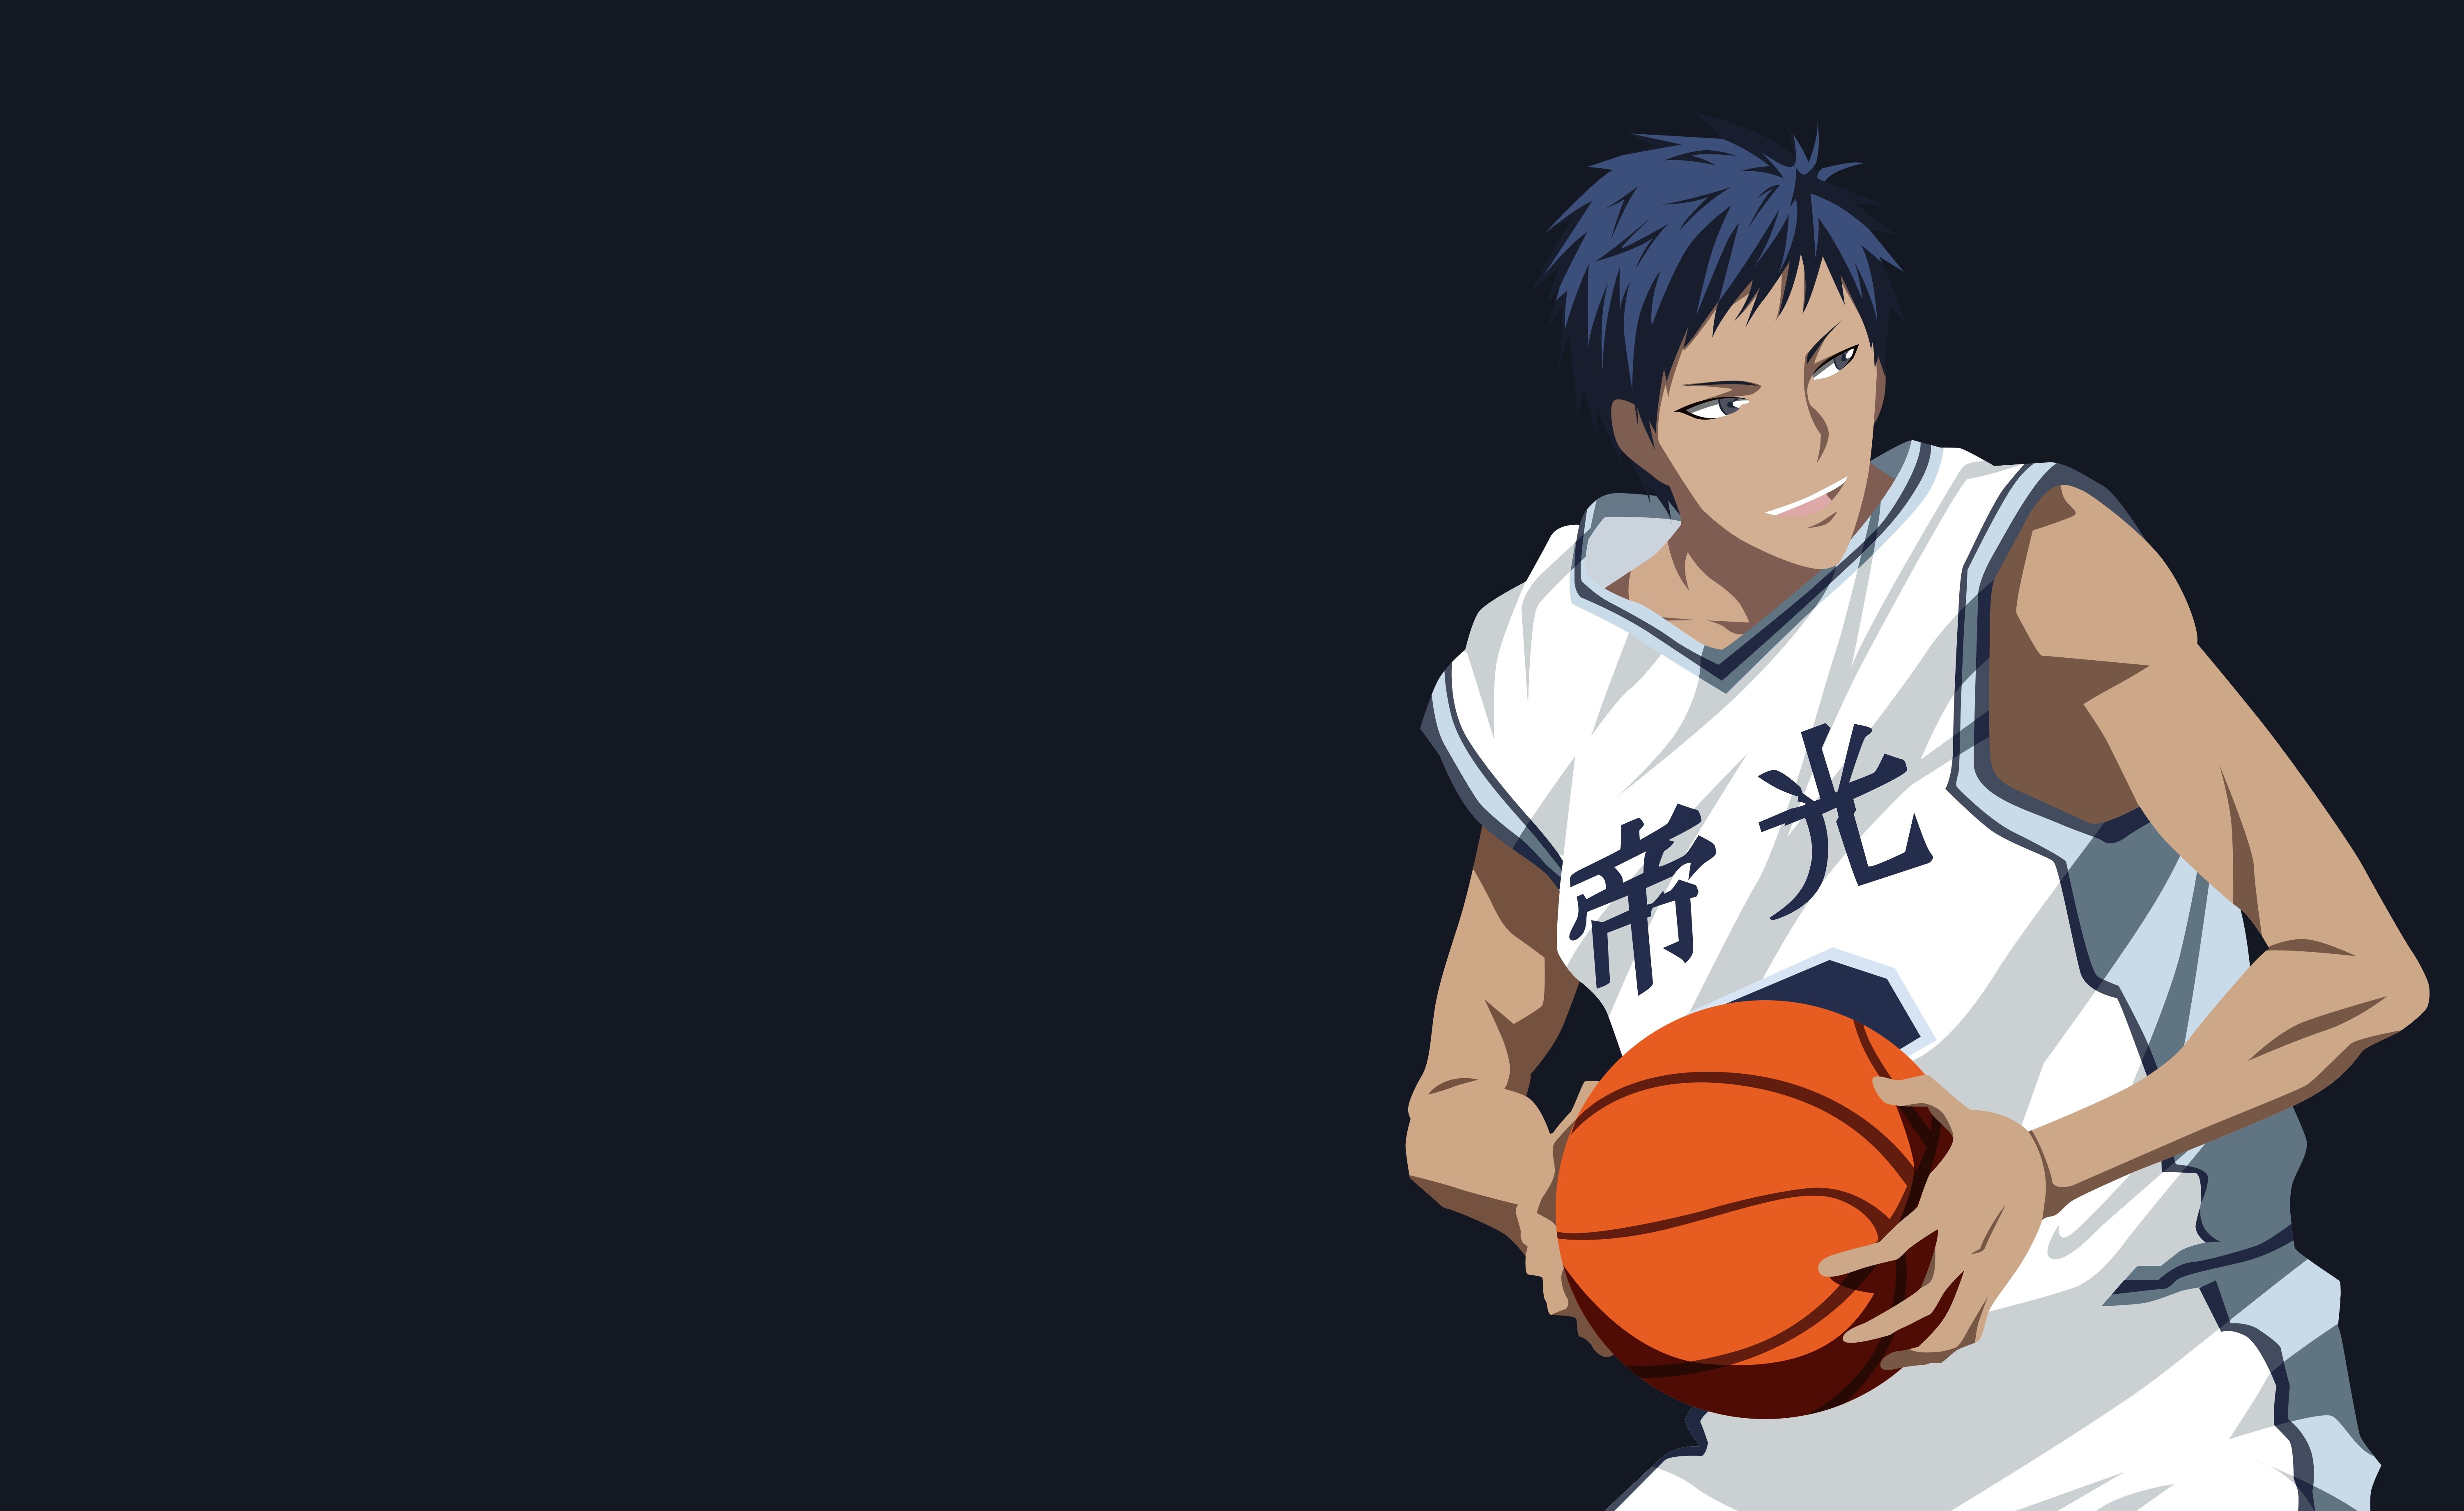 Pin by hime23 on Anime | Kuroko no basket characters, Anime basket, Kuroko  no basket